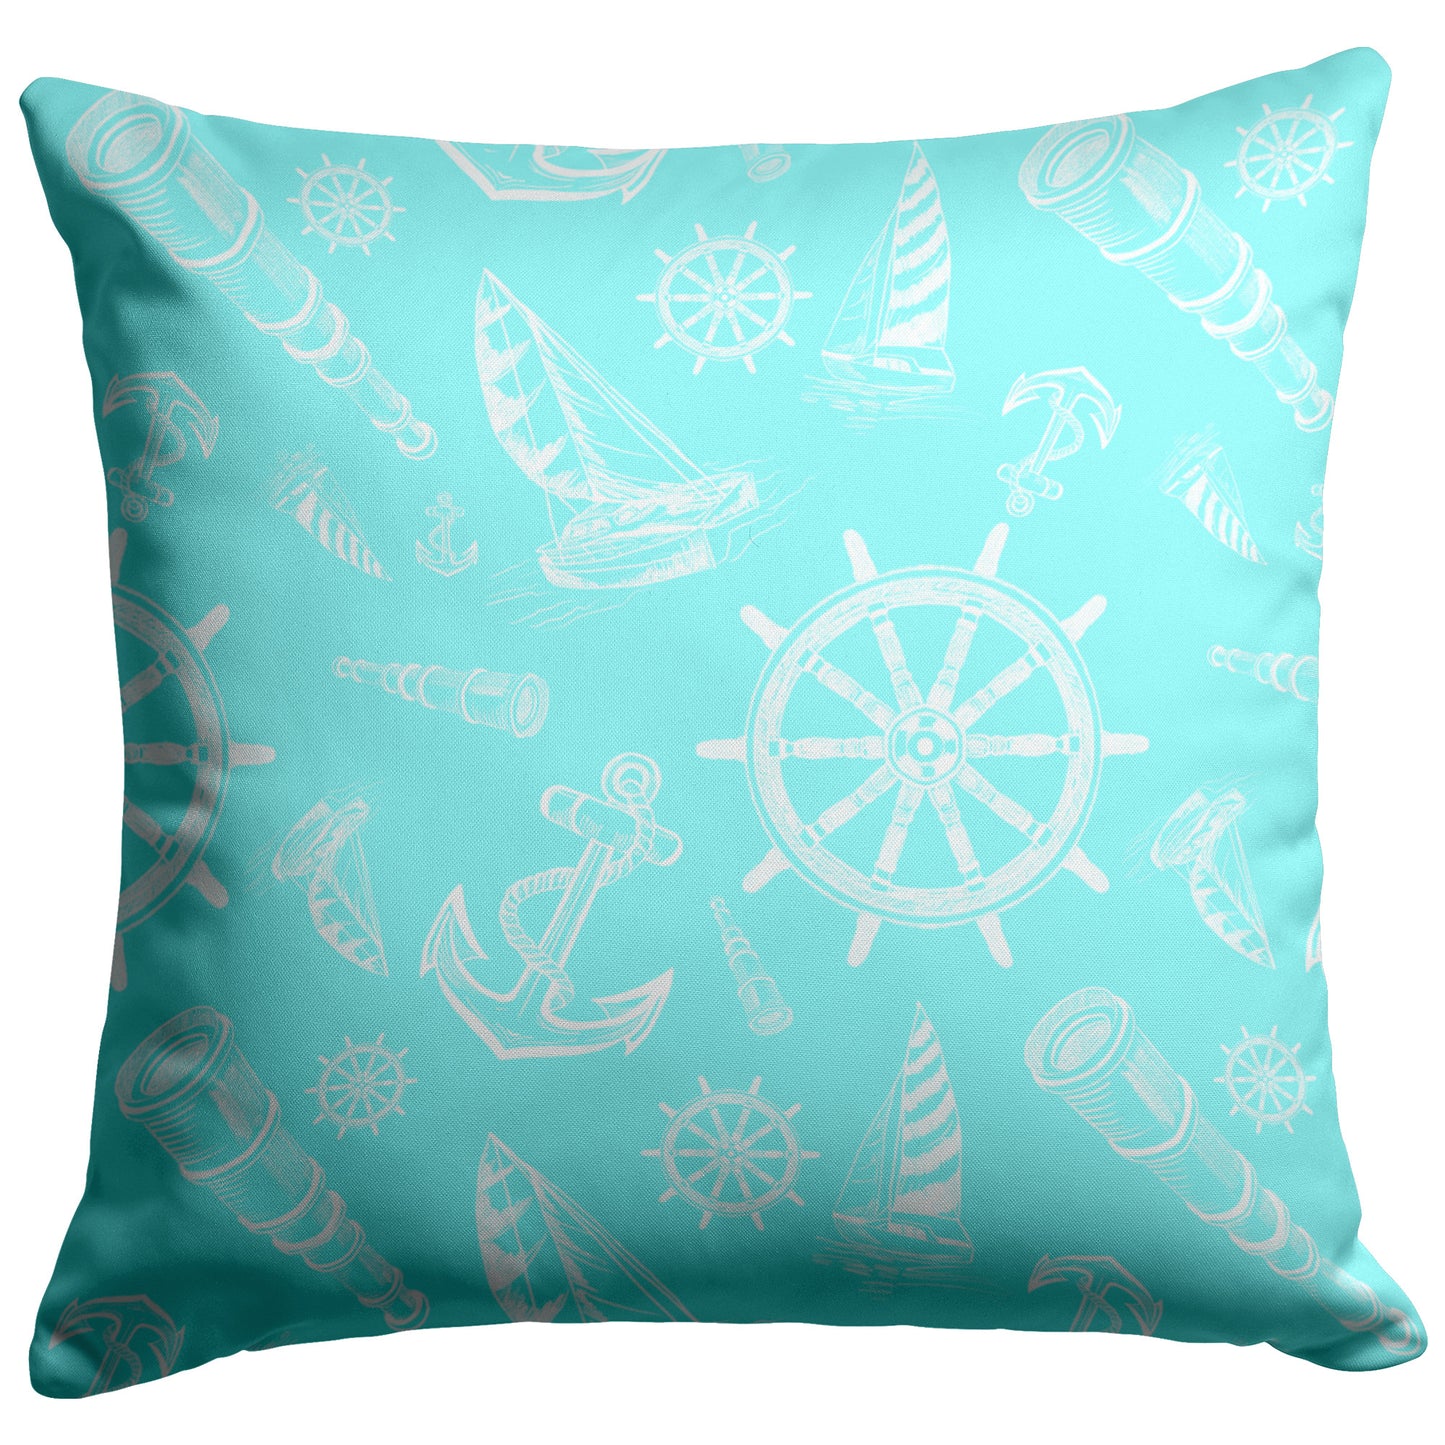 Nautical Sketches Design on Coastal Blue Background, Throw Pillow